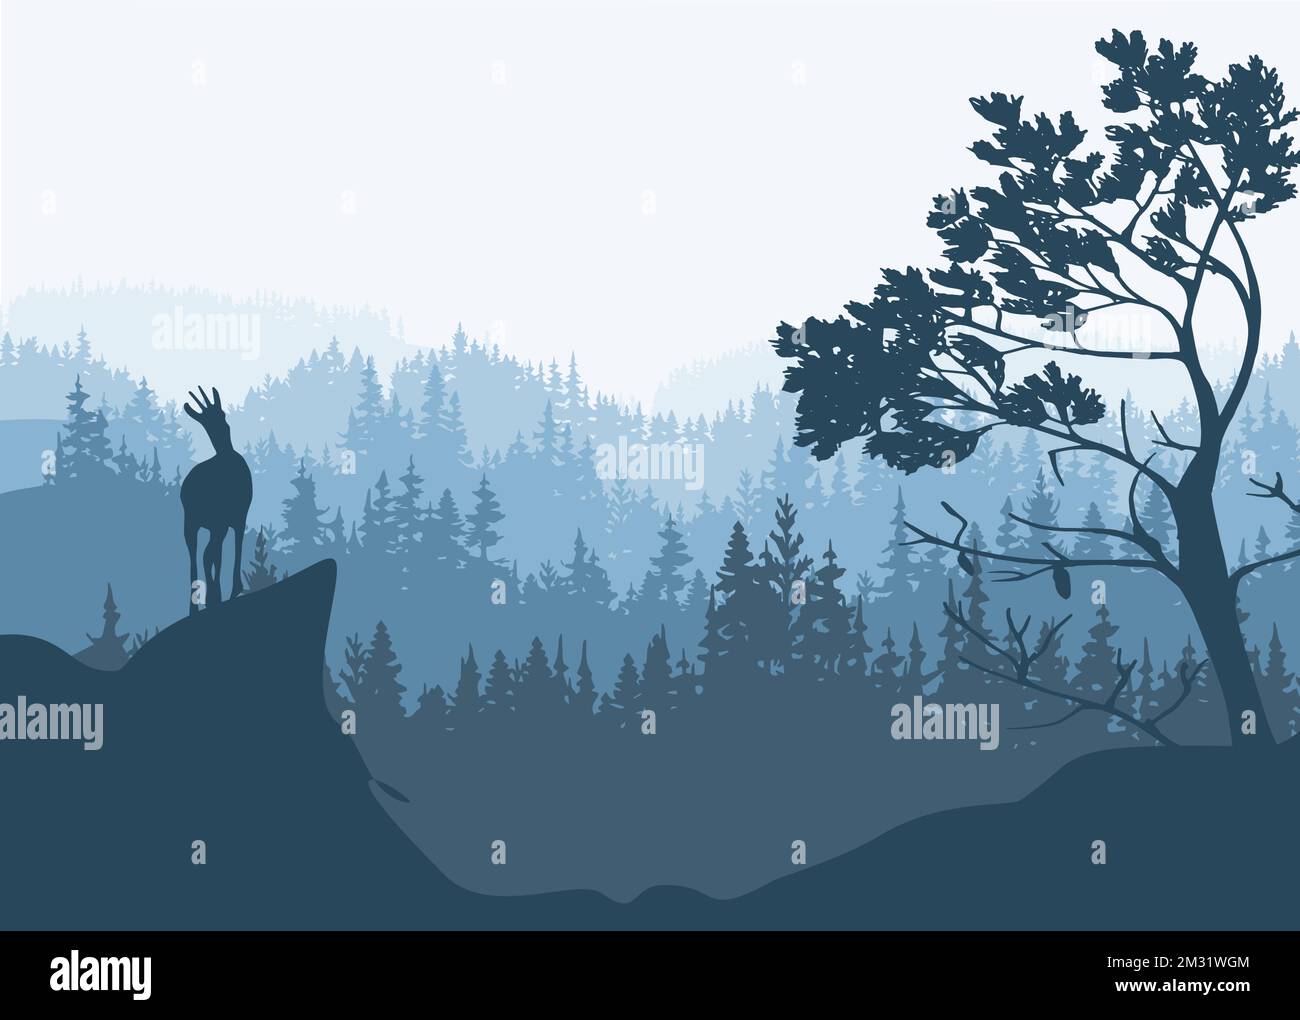 Ein Chamois steht auf einem Hügel mit Bergen und Wald im Hintergrund. Kiefer im Vordergrund. Magische nebelige Landschaft. Naturillustrierung. Stock Vektor